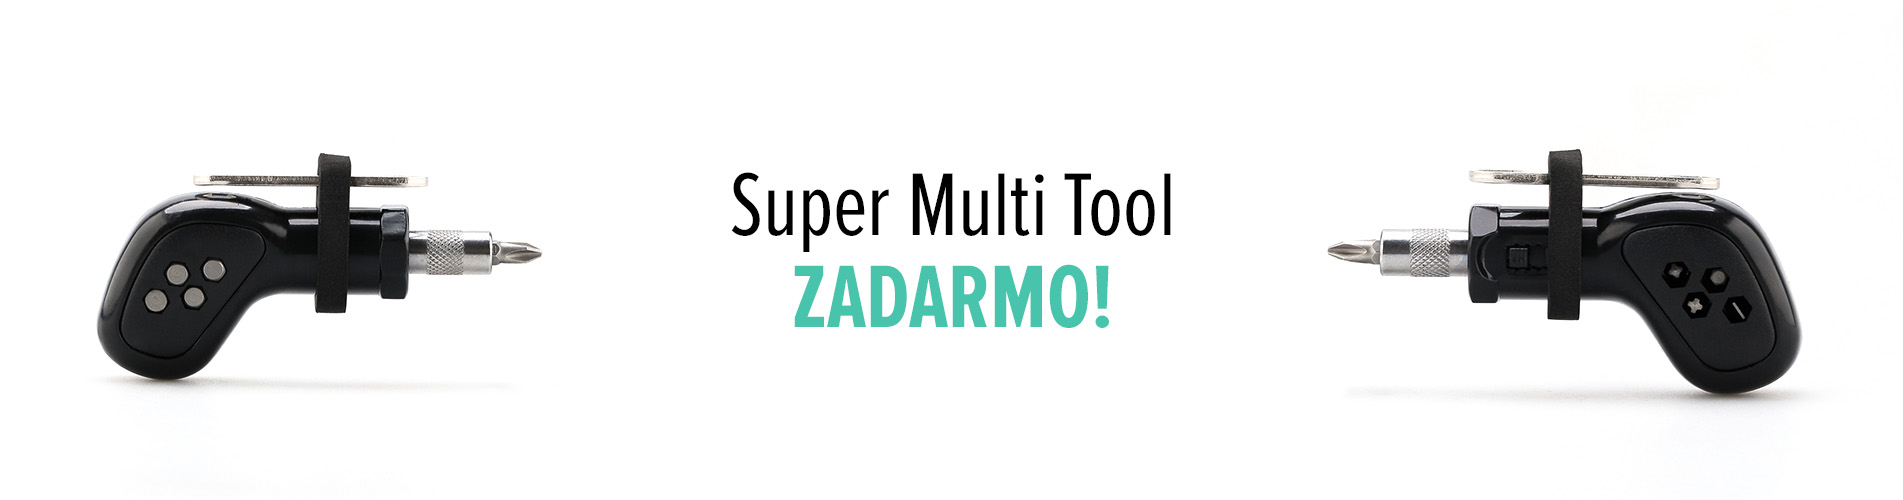 Super Multi Tool ZADARMO!